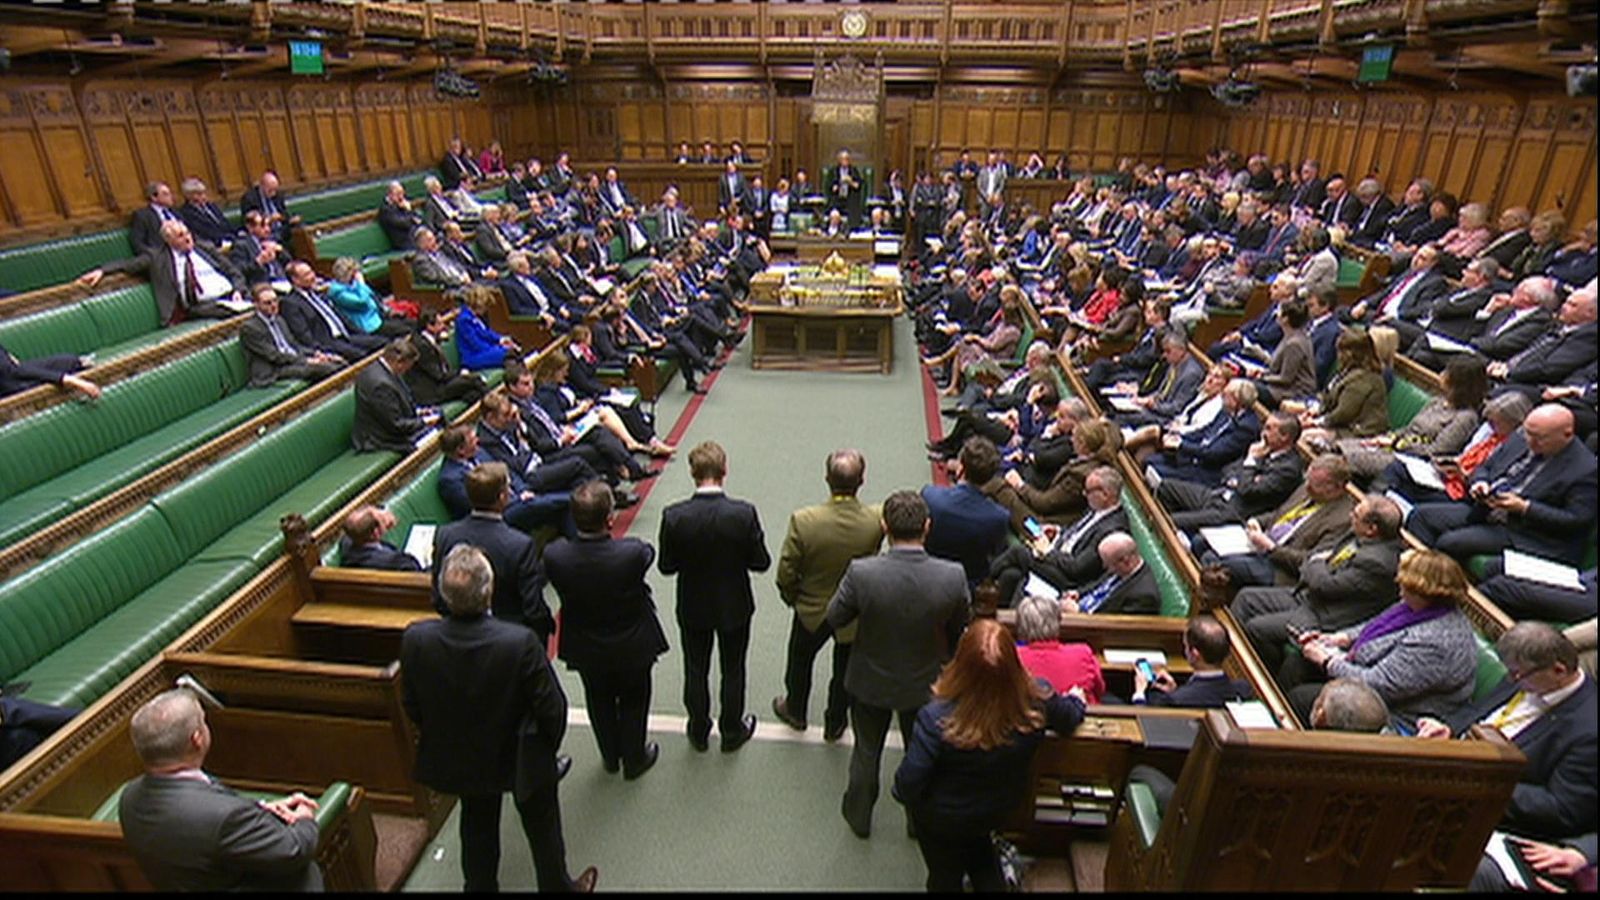 Палата общин с каким событием связано. Палата общин Великобритании. Парламент Англии палата общин. 2 Палаты парламента Великобритании. Палата общин Великобритании фото.